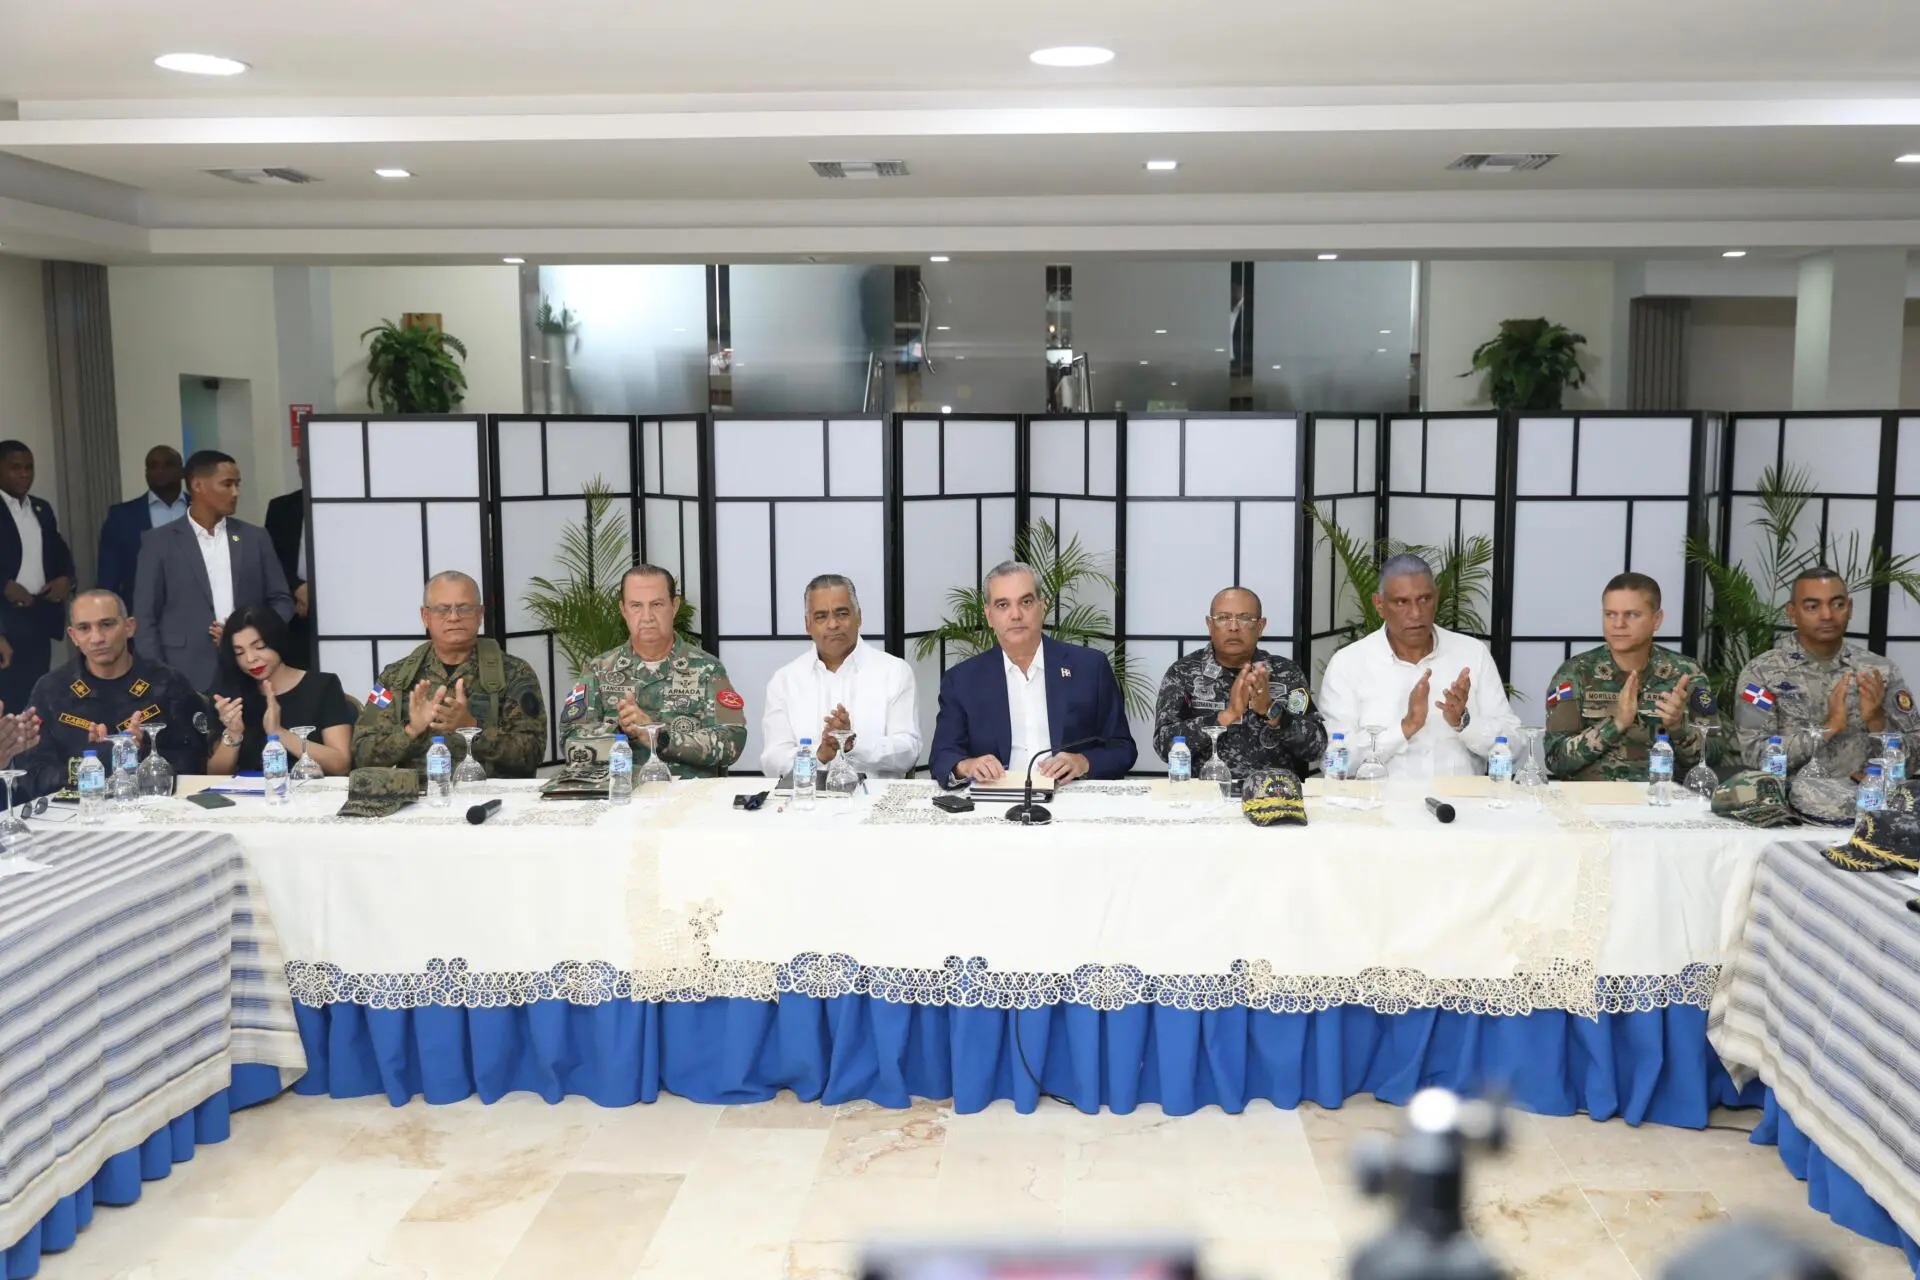 El presidente Luis Abinader junto a los integrantes de la mesa del Plan de Seguridad Ciudadana. (Foto: fuente externa)